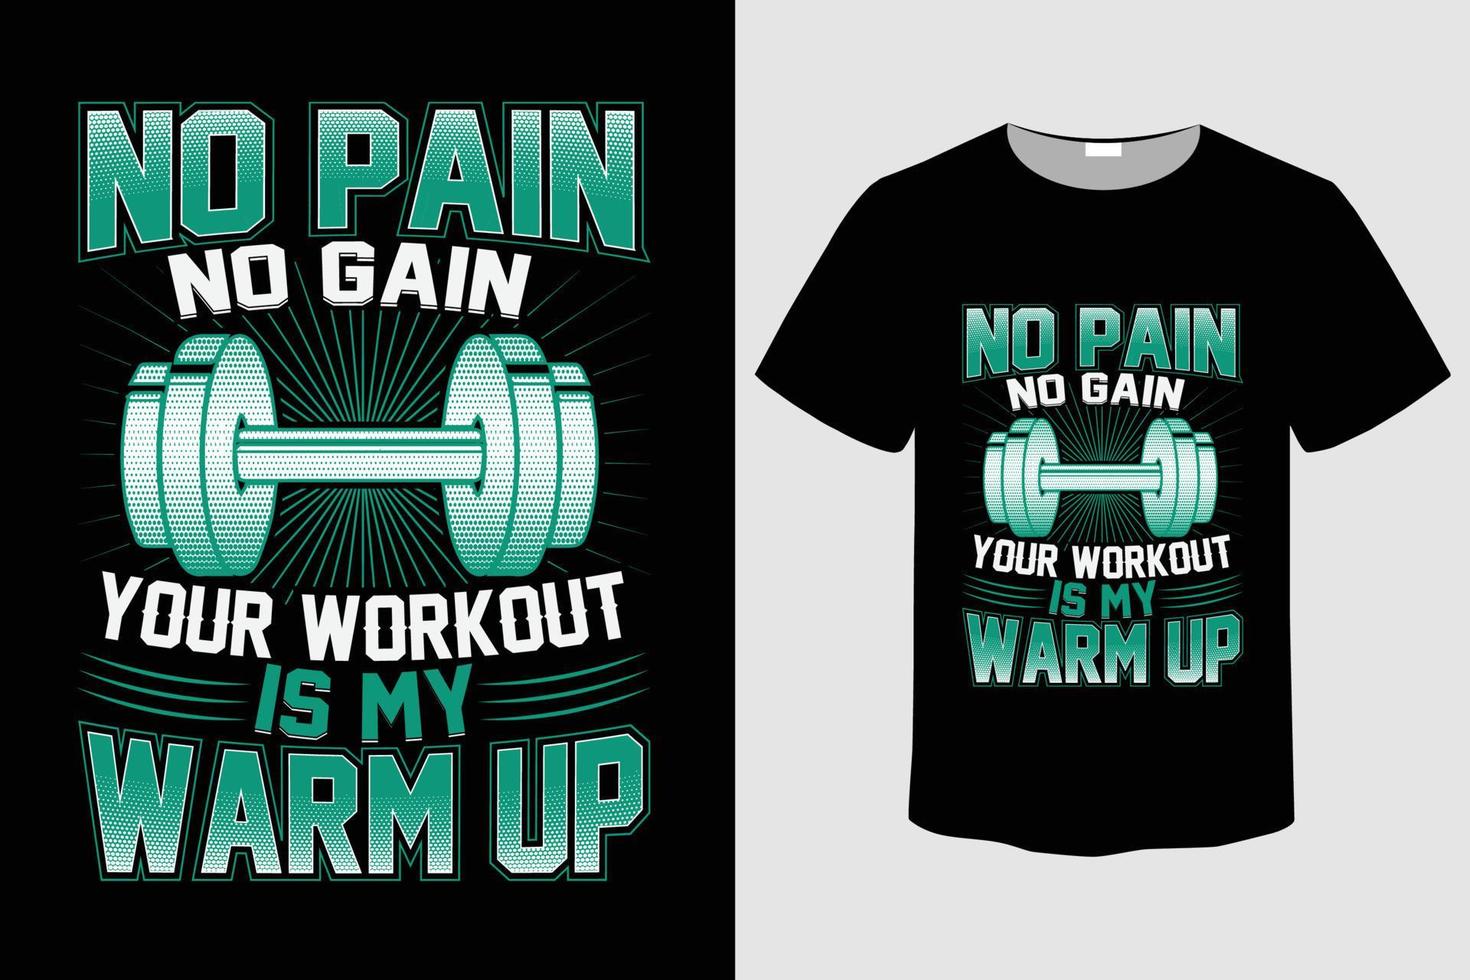 slogan de t-shirt de gym avec logo de bodybuilder et illustration vectorielle de fond grunge vecteur